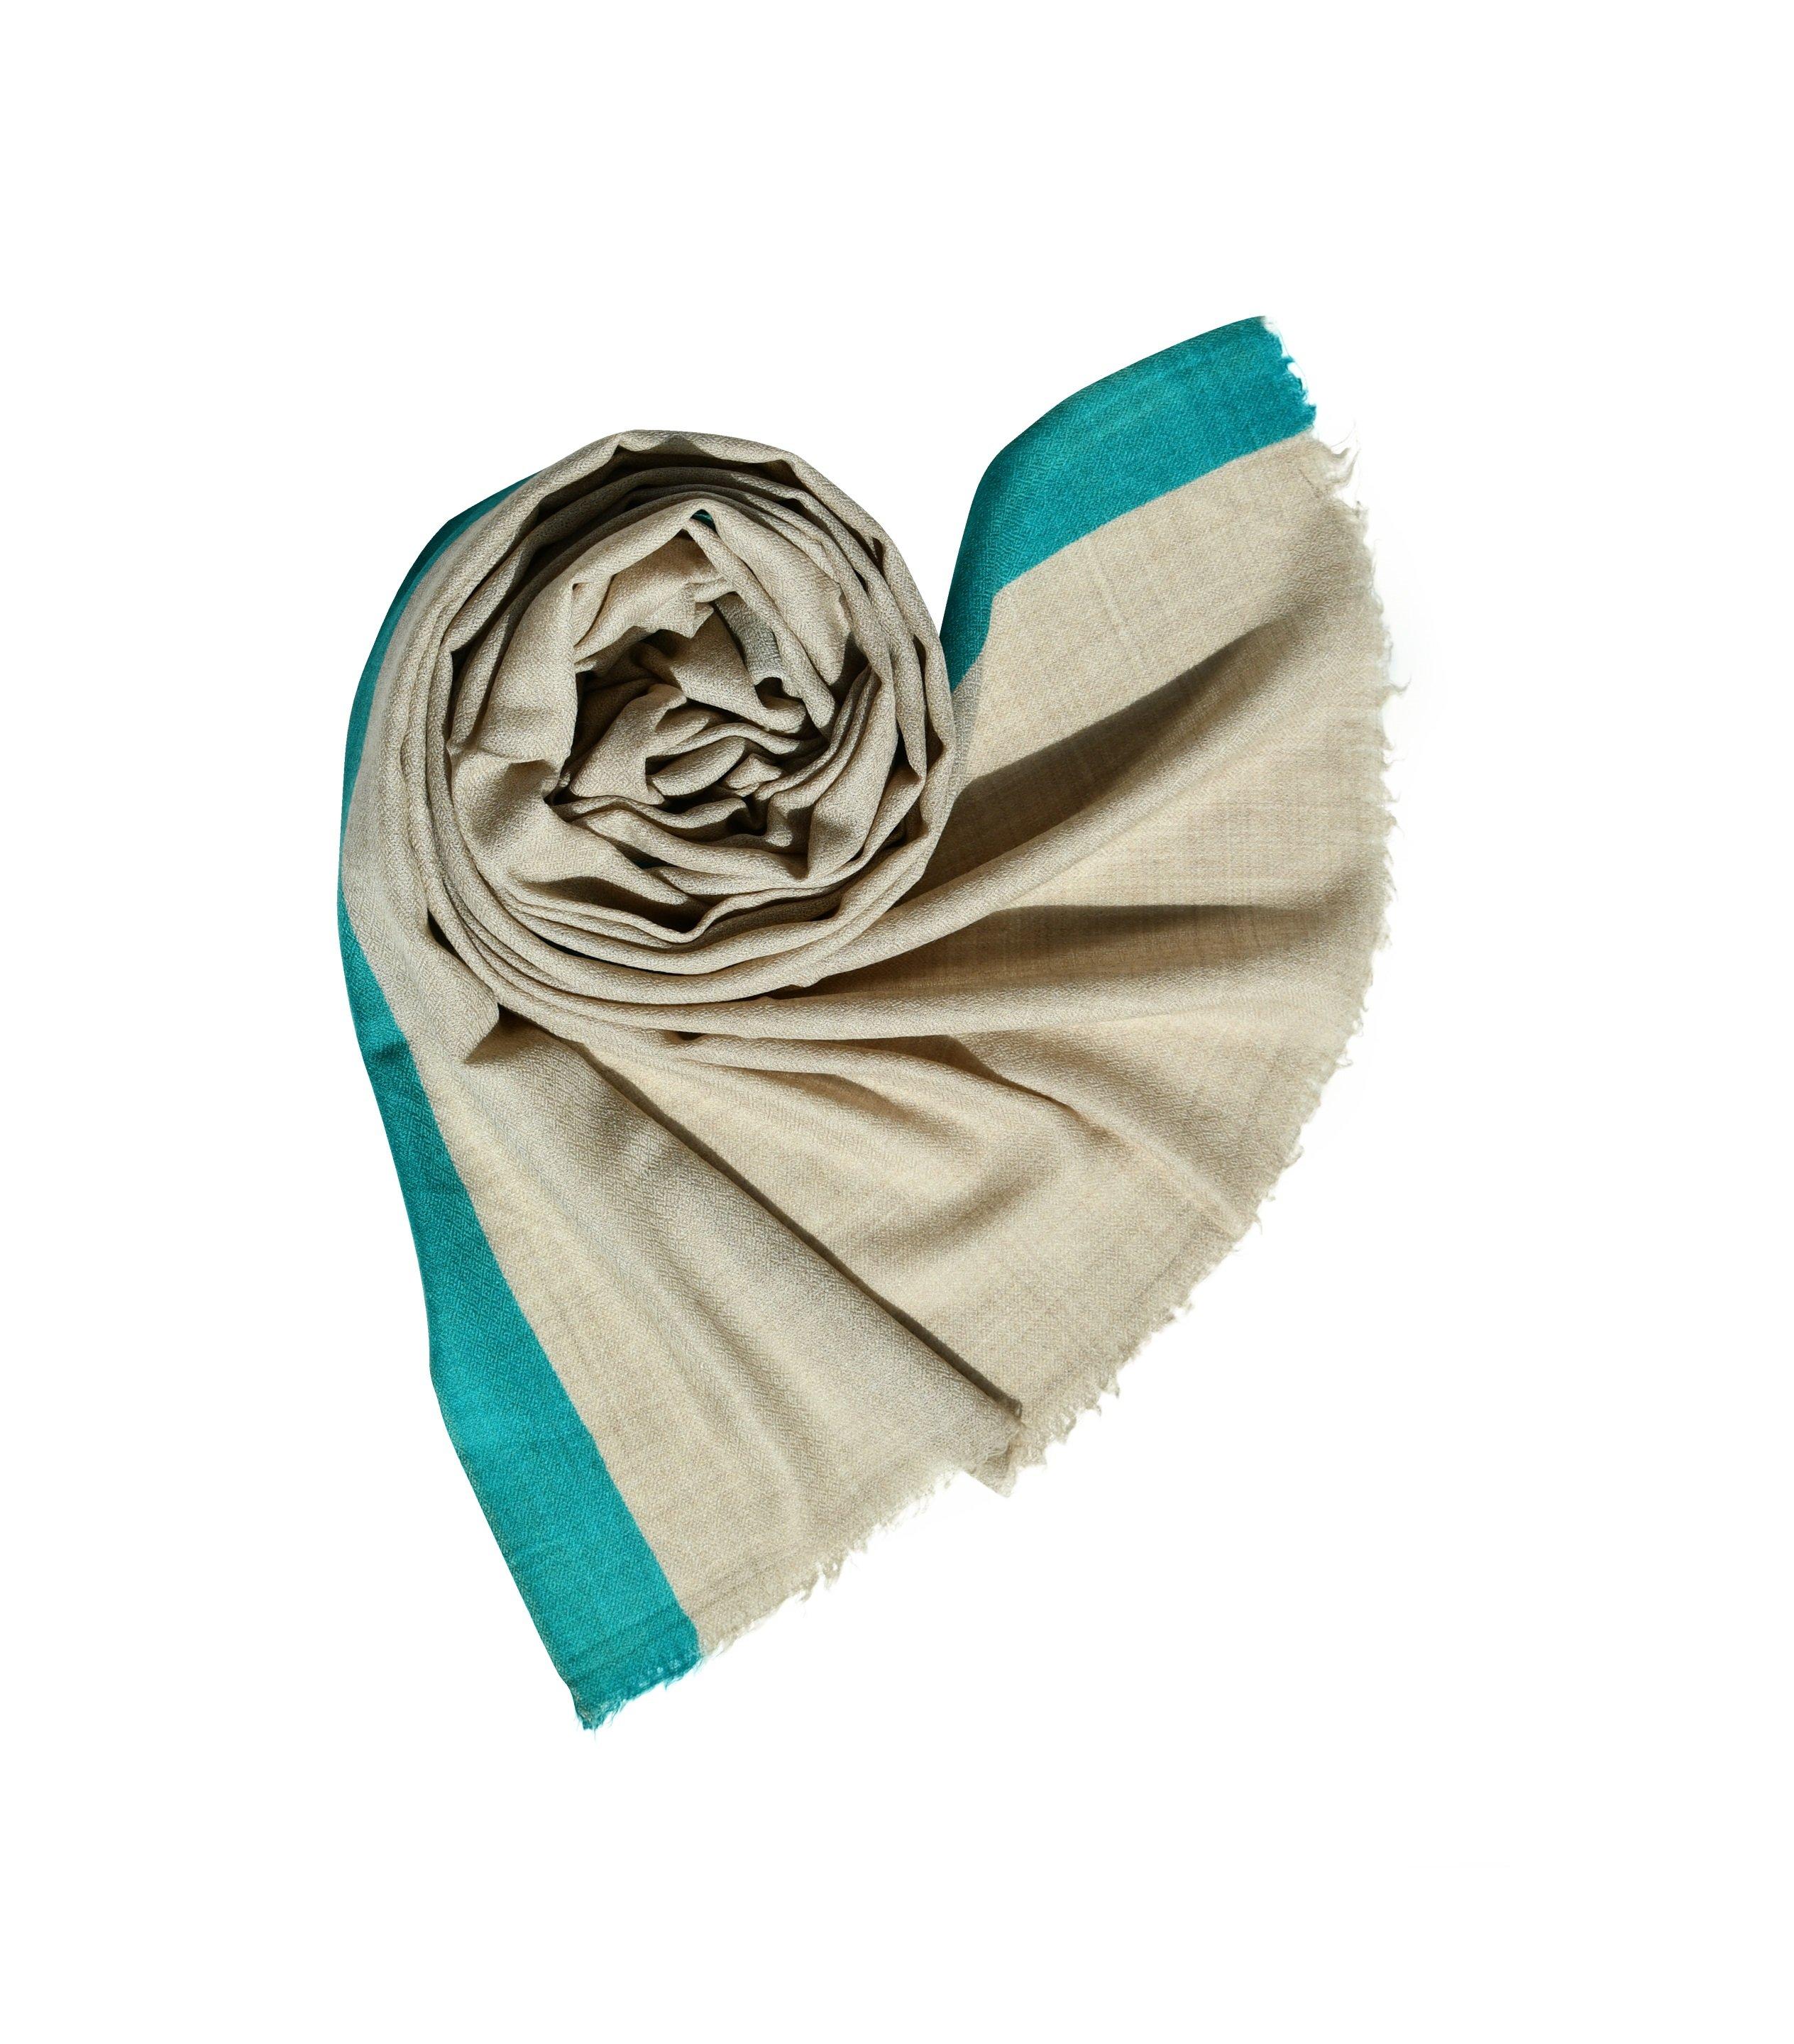 пеги д сам chilli peg barrel blue Шерстяной шарф простого дизайна, двухцветный, носится на шее и голове, размер: 210 x 75 см. Blue Chilli, синий